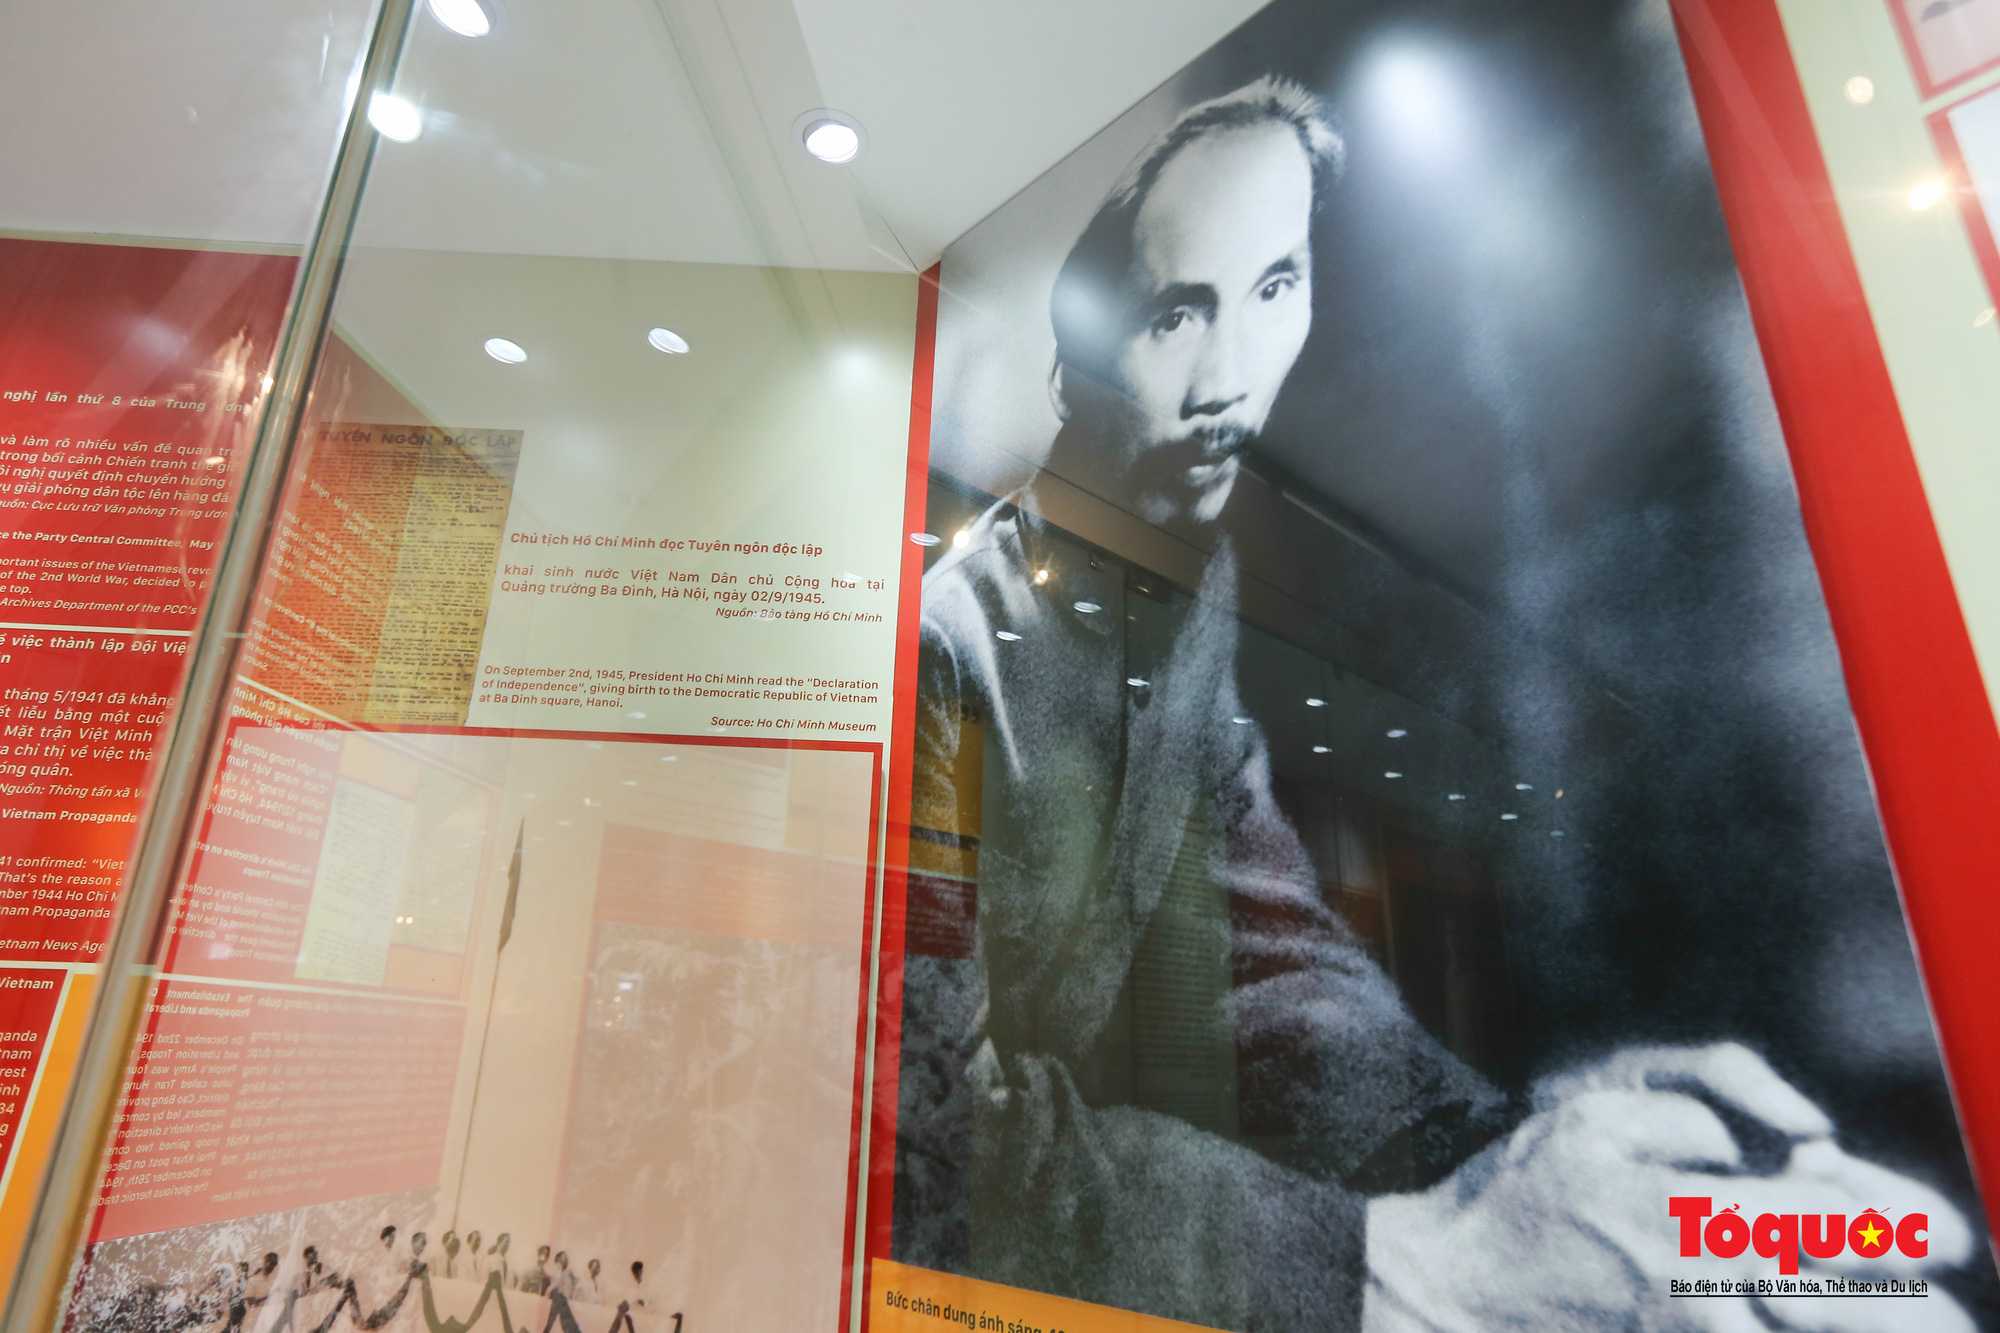 Khai mạc trưng bày chuyên đề: Hồ Chí Minh - Những nét phác họa chân dung; Những tấm gương bình dị mà cao quý  - Ảnh 19.